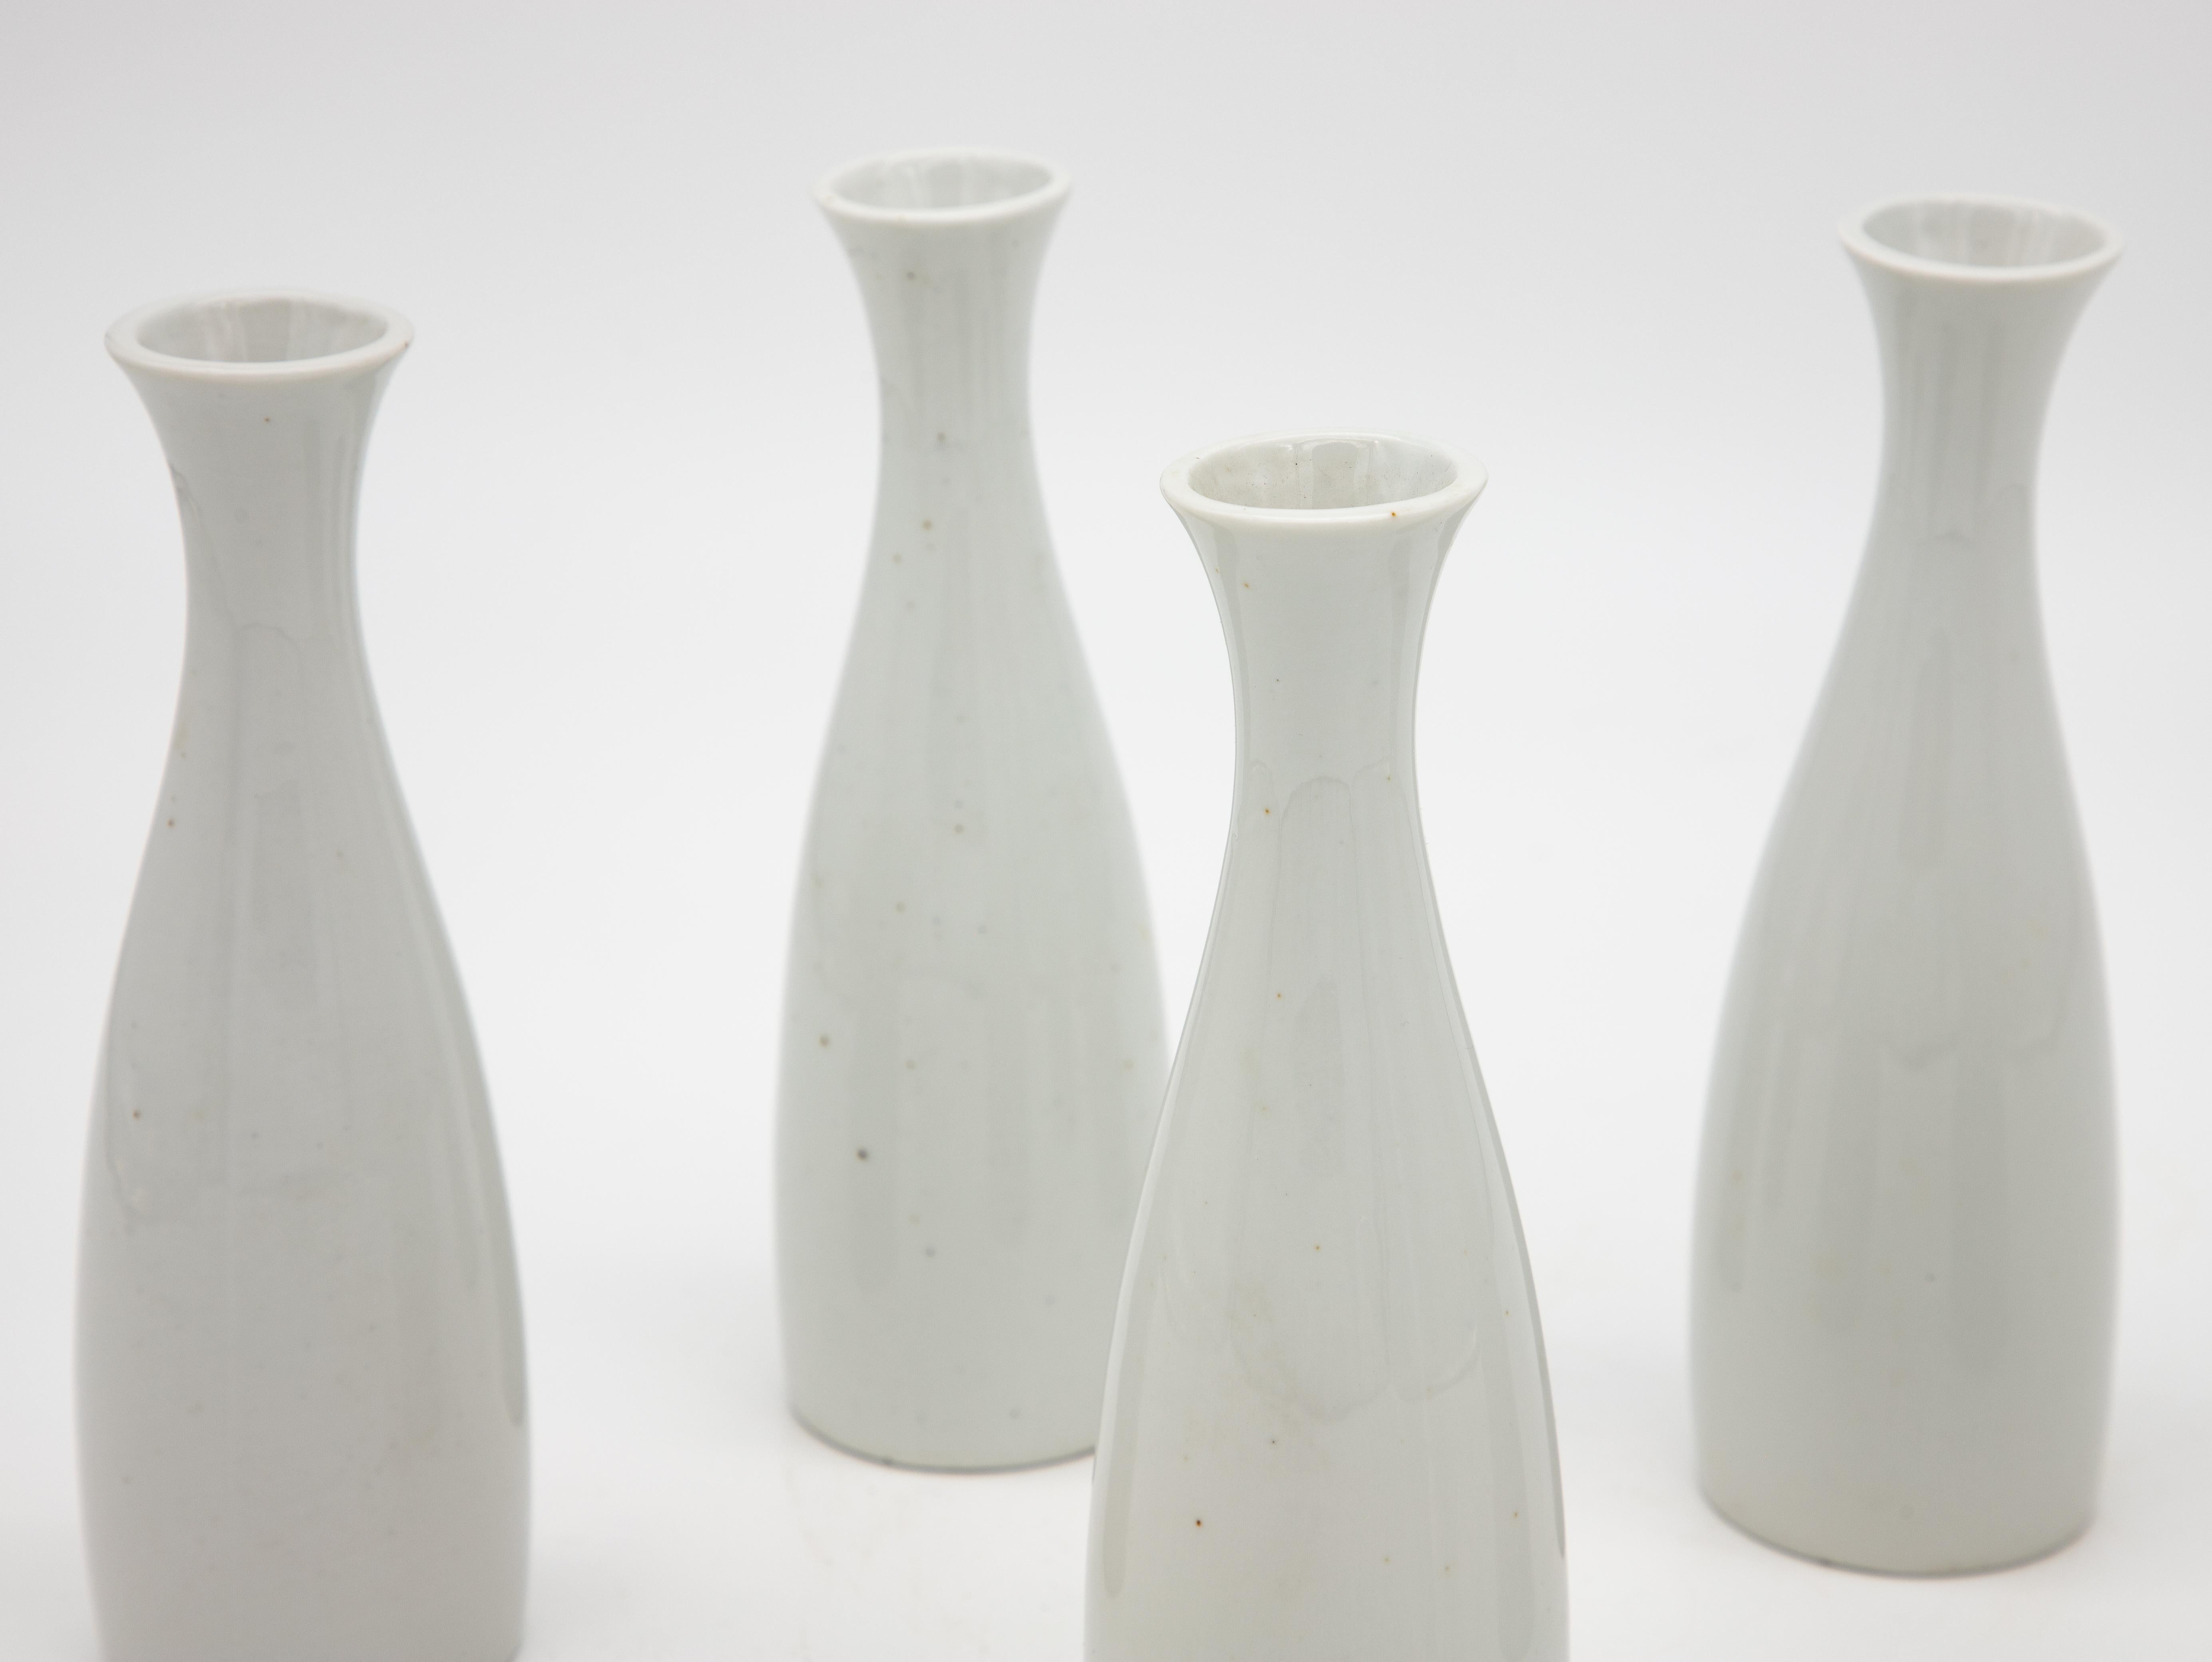 A set of five white ceramic bud vases. Green maker's mark on the bottom reads 